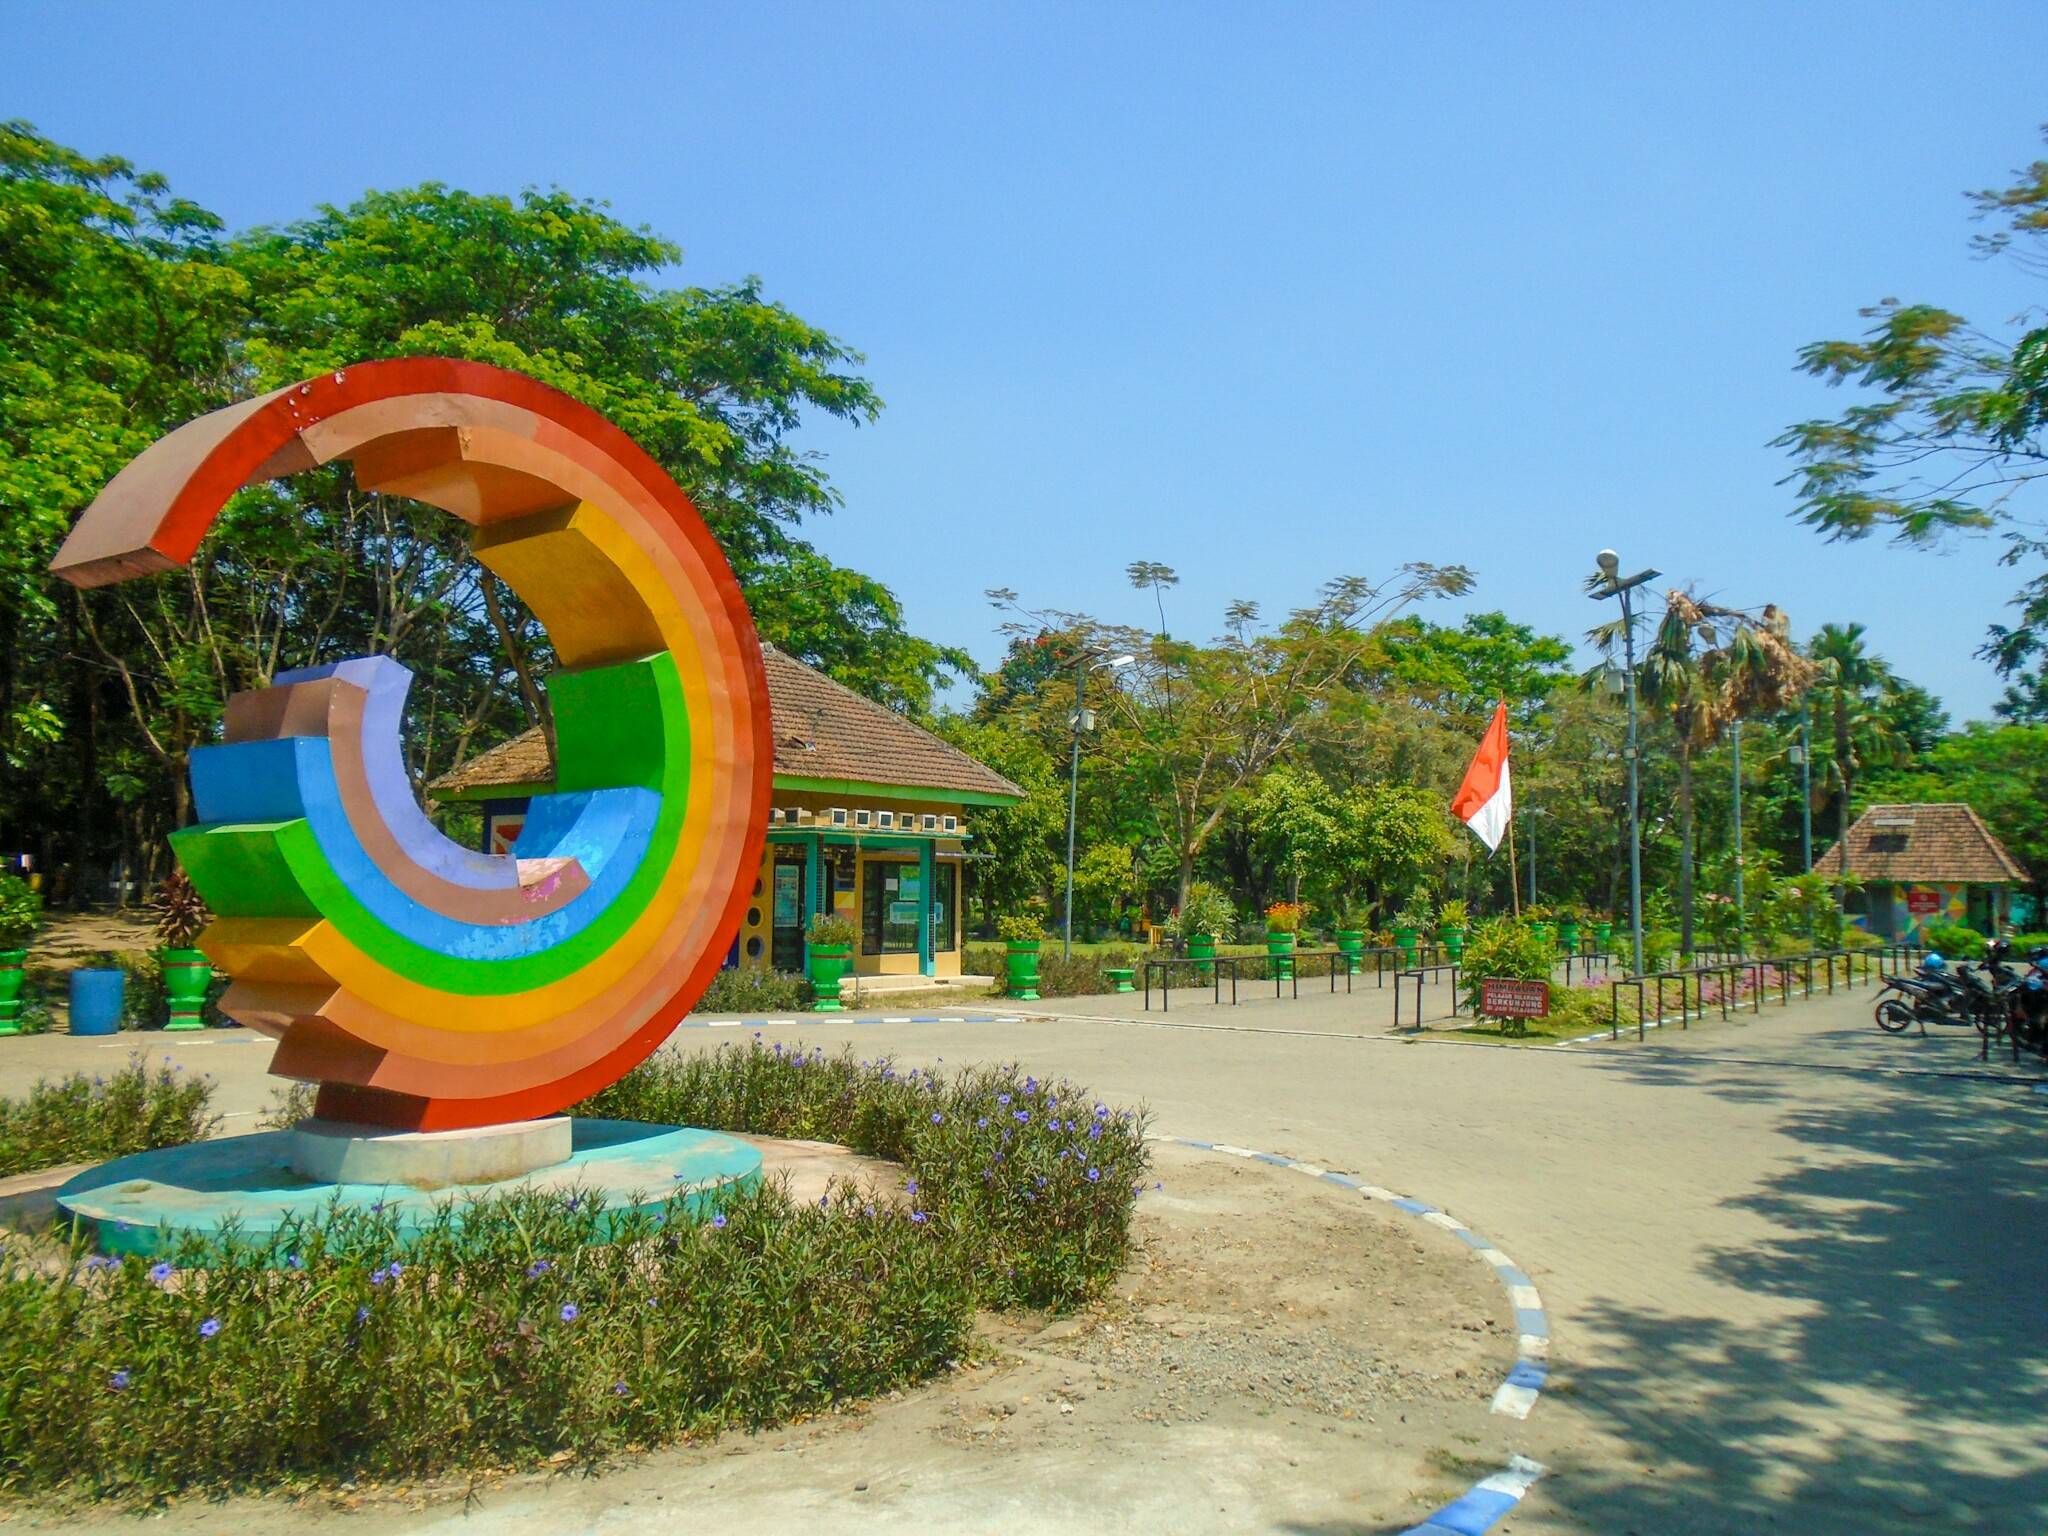 Taman Kebon Ratu Taman Indah Dengan Spot Foto Berbahan Barang Bekas